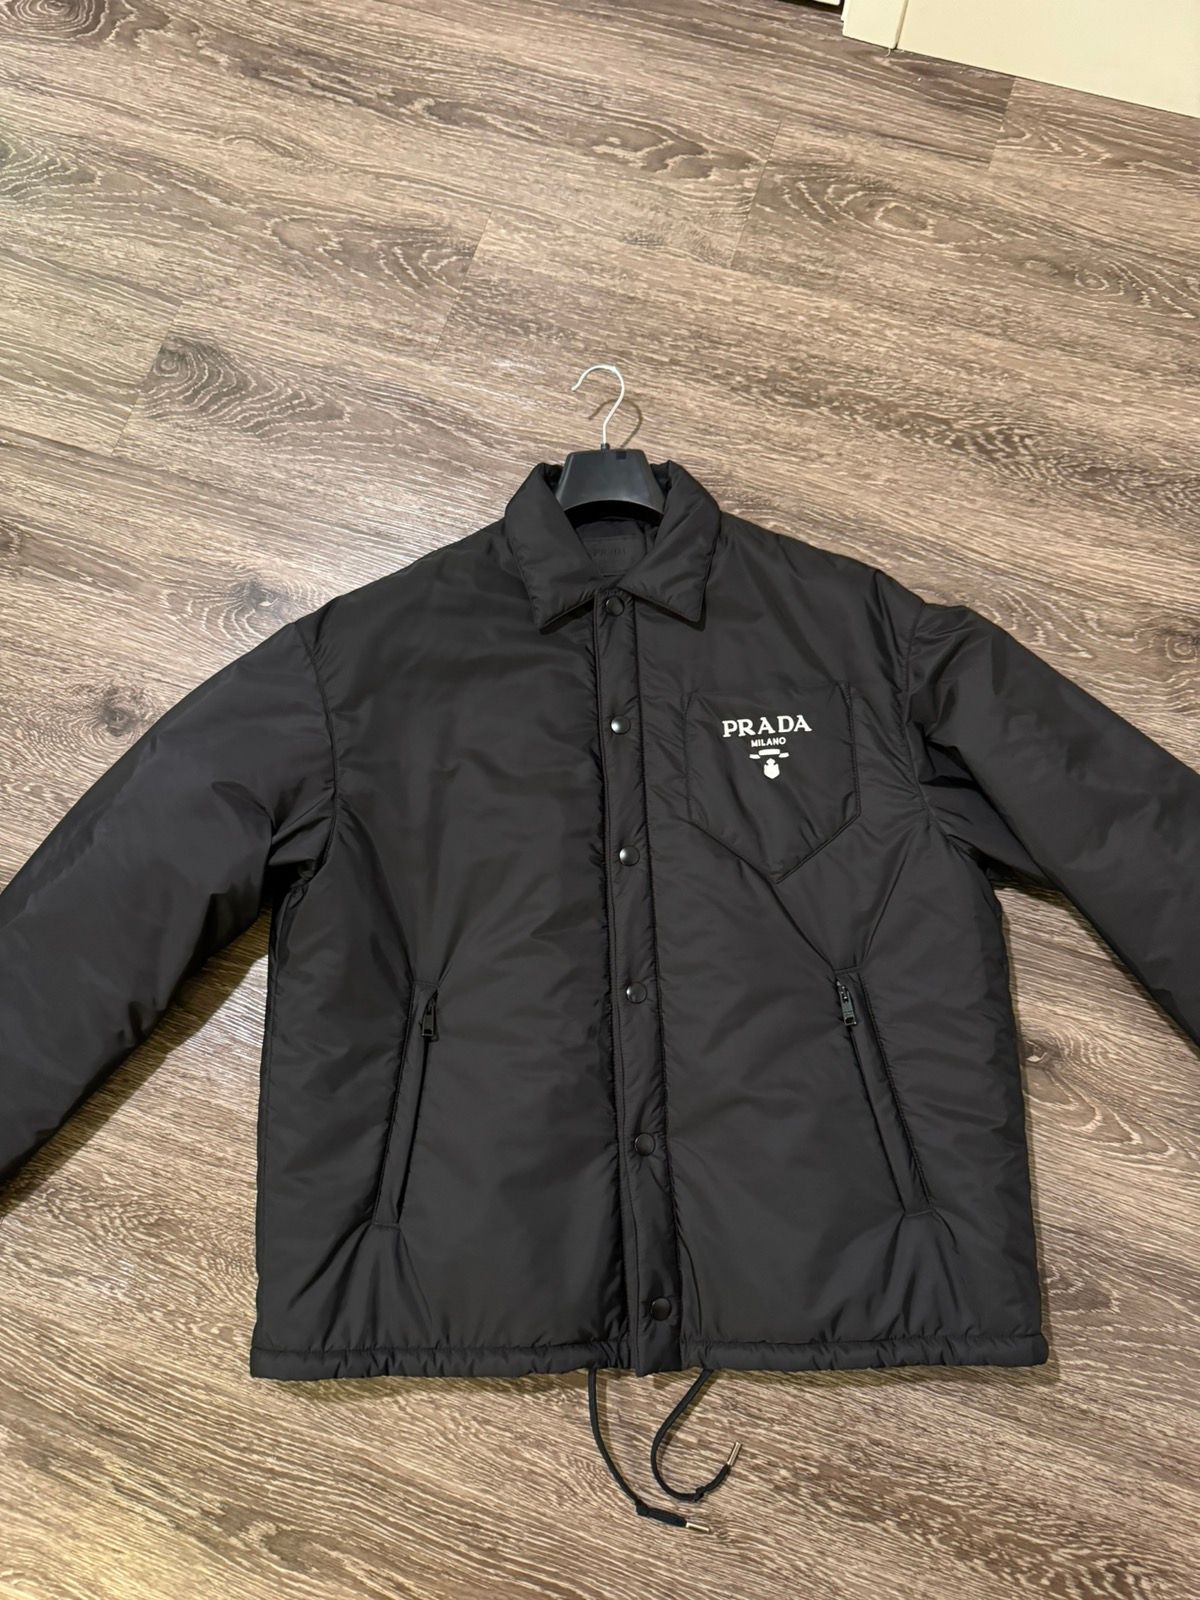 Pre-owned Prada Re-nylon Jacket Size Medium In Black